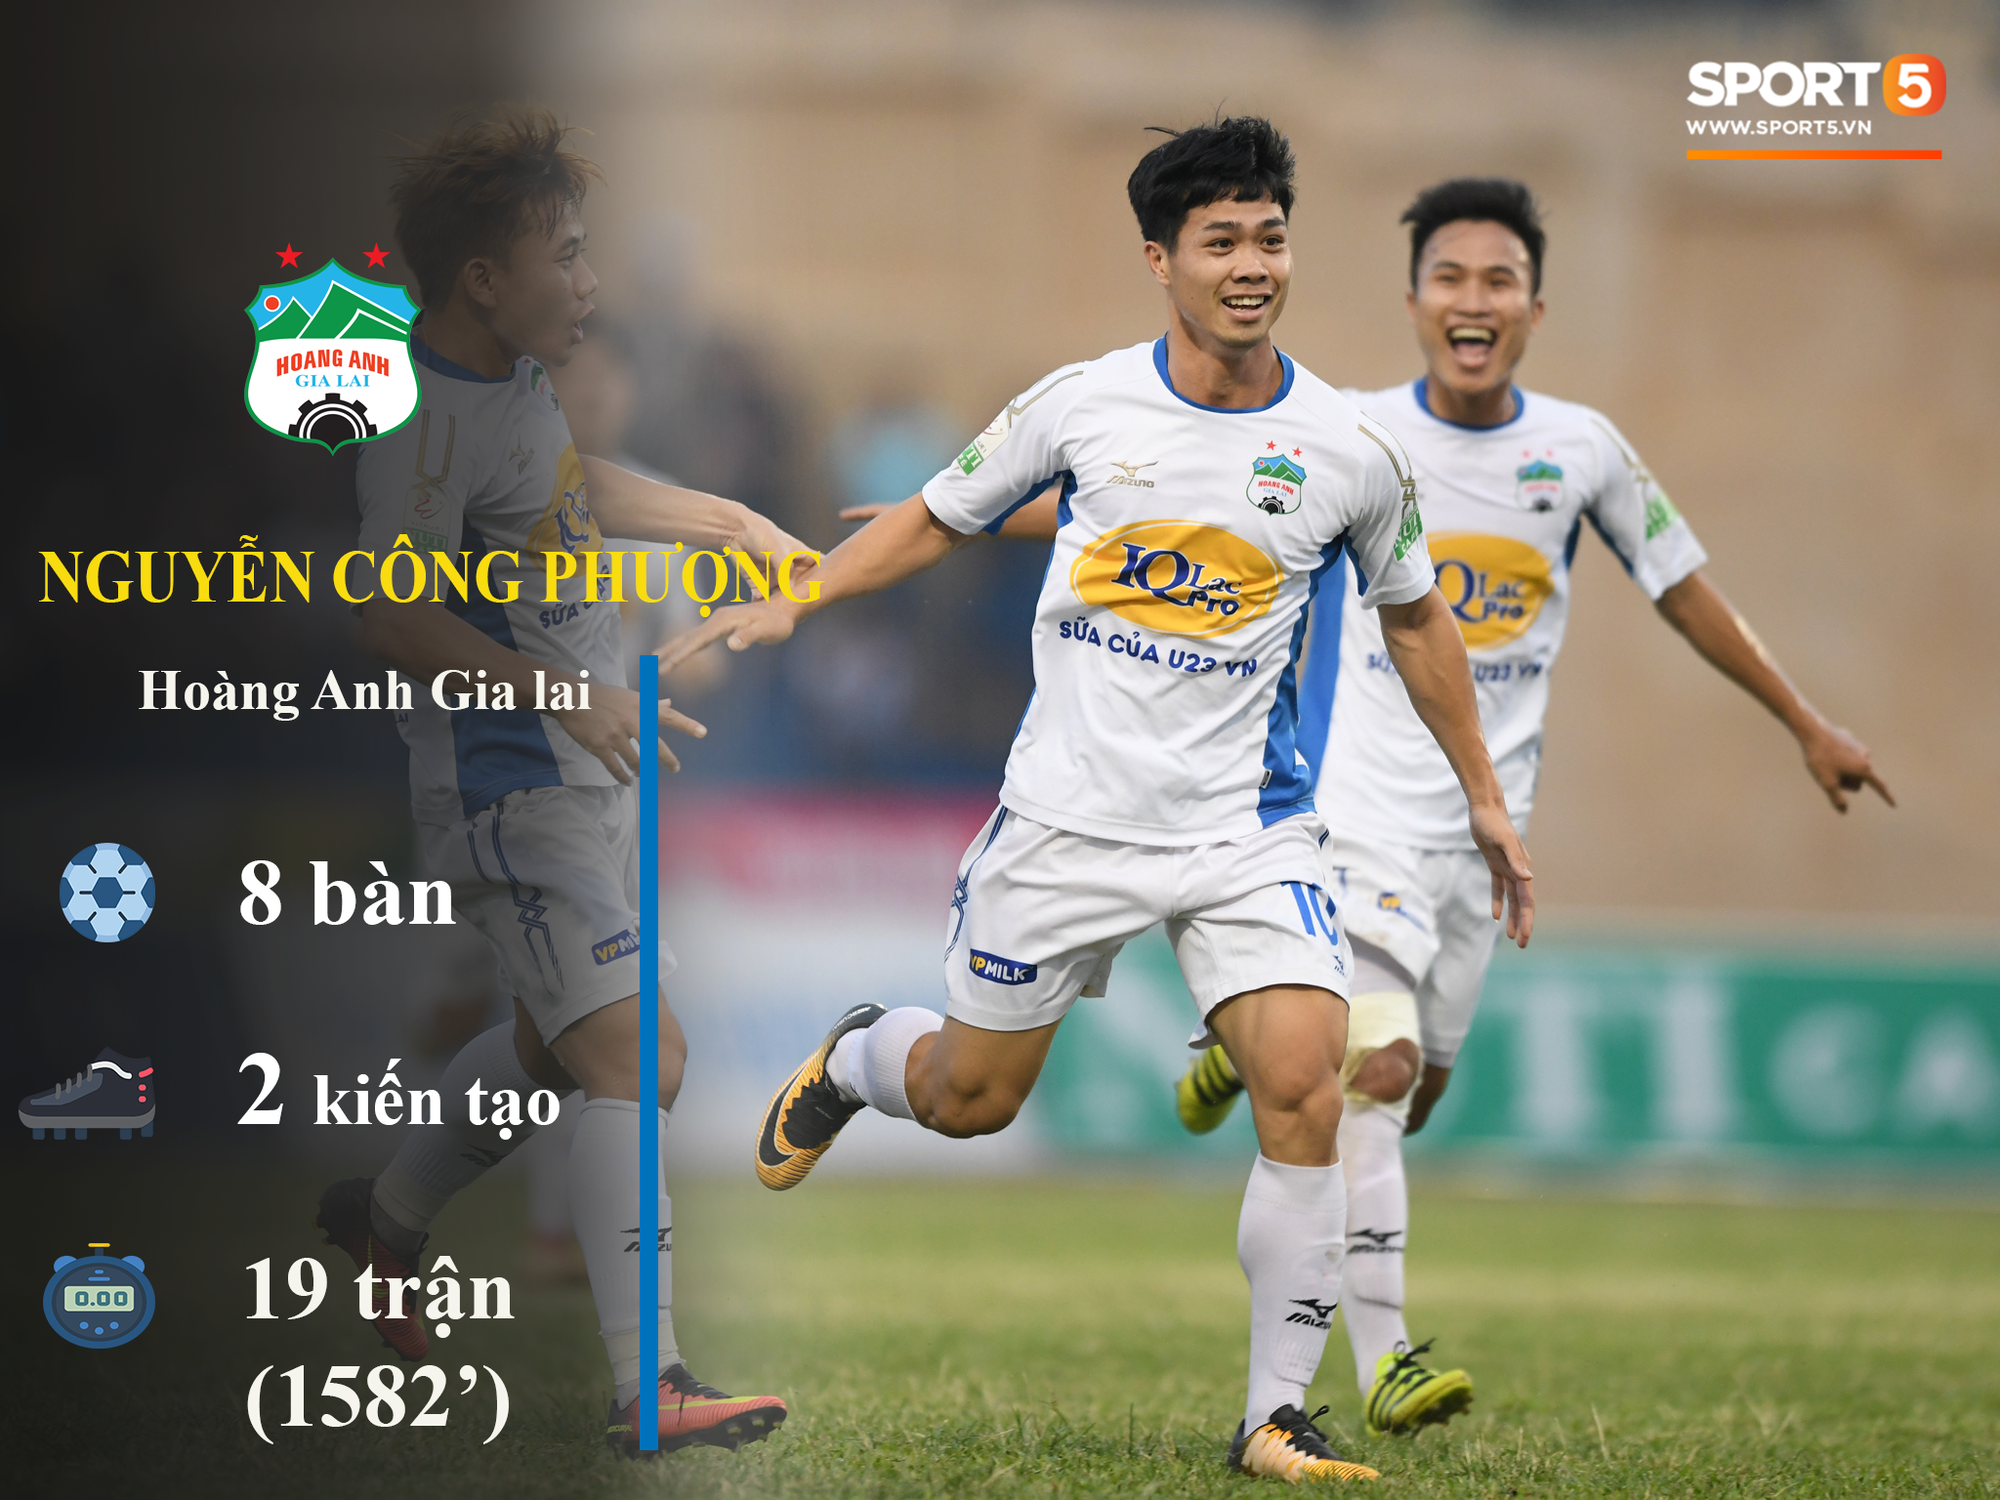 Những thống kê đáng chú ý của cầu thủ U23 Việt Nam (P1) - Ảnh 2.